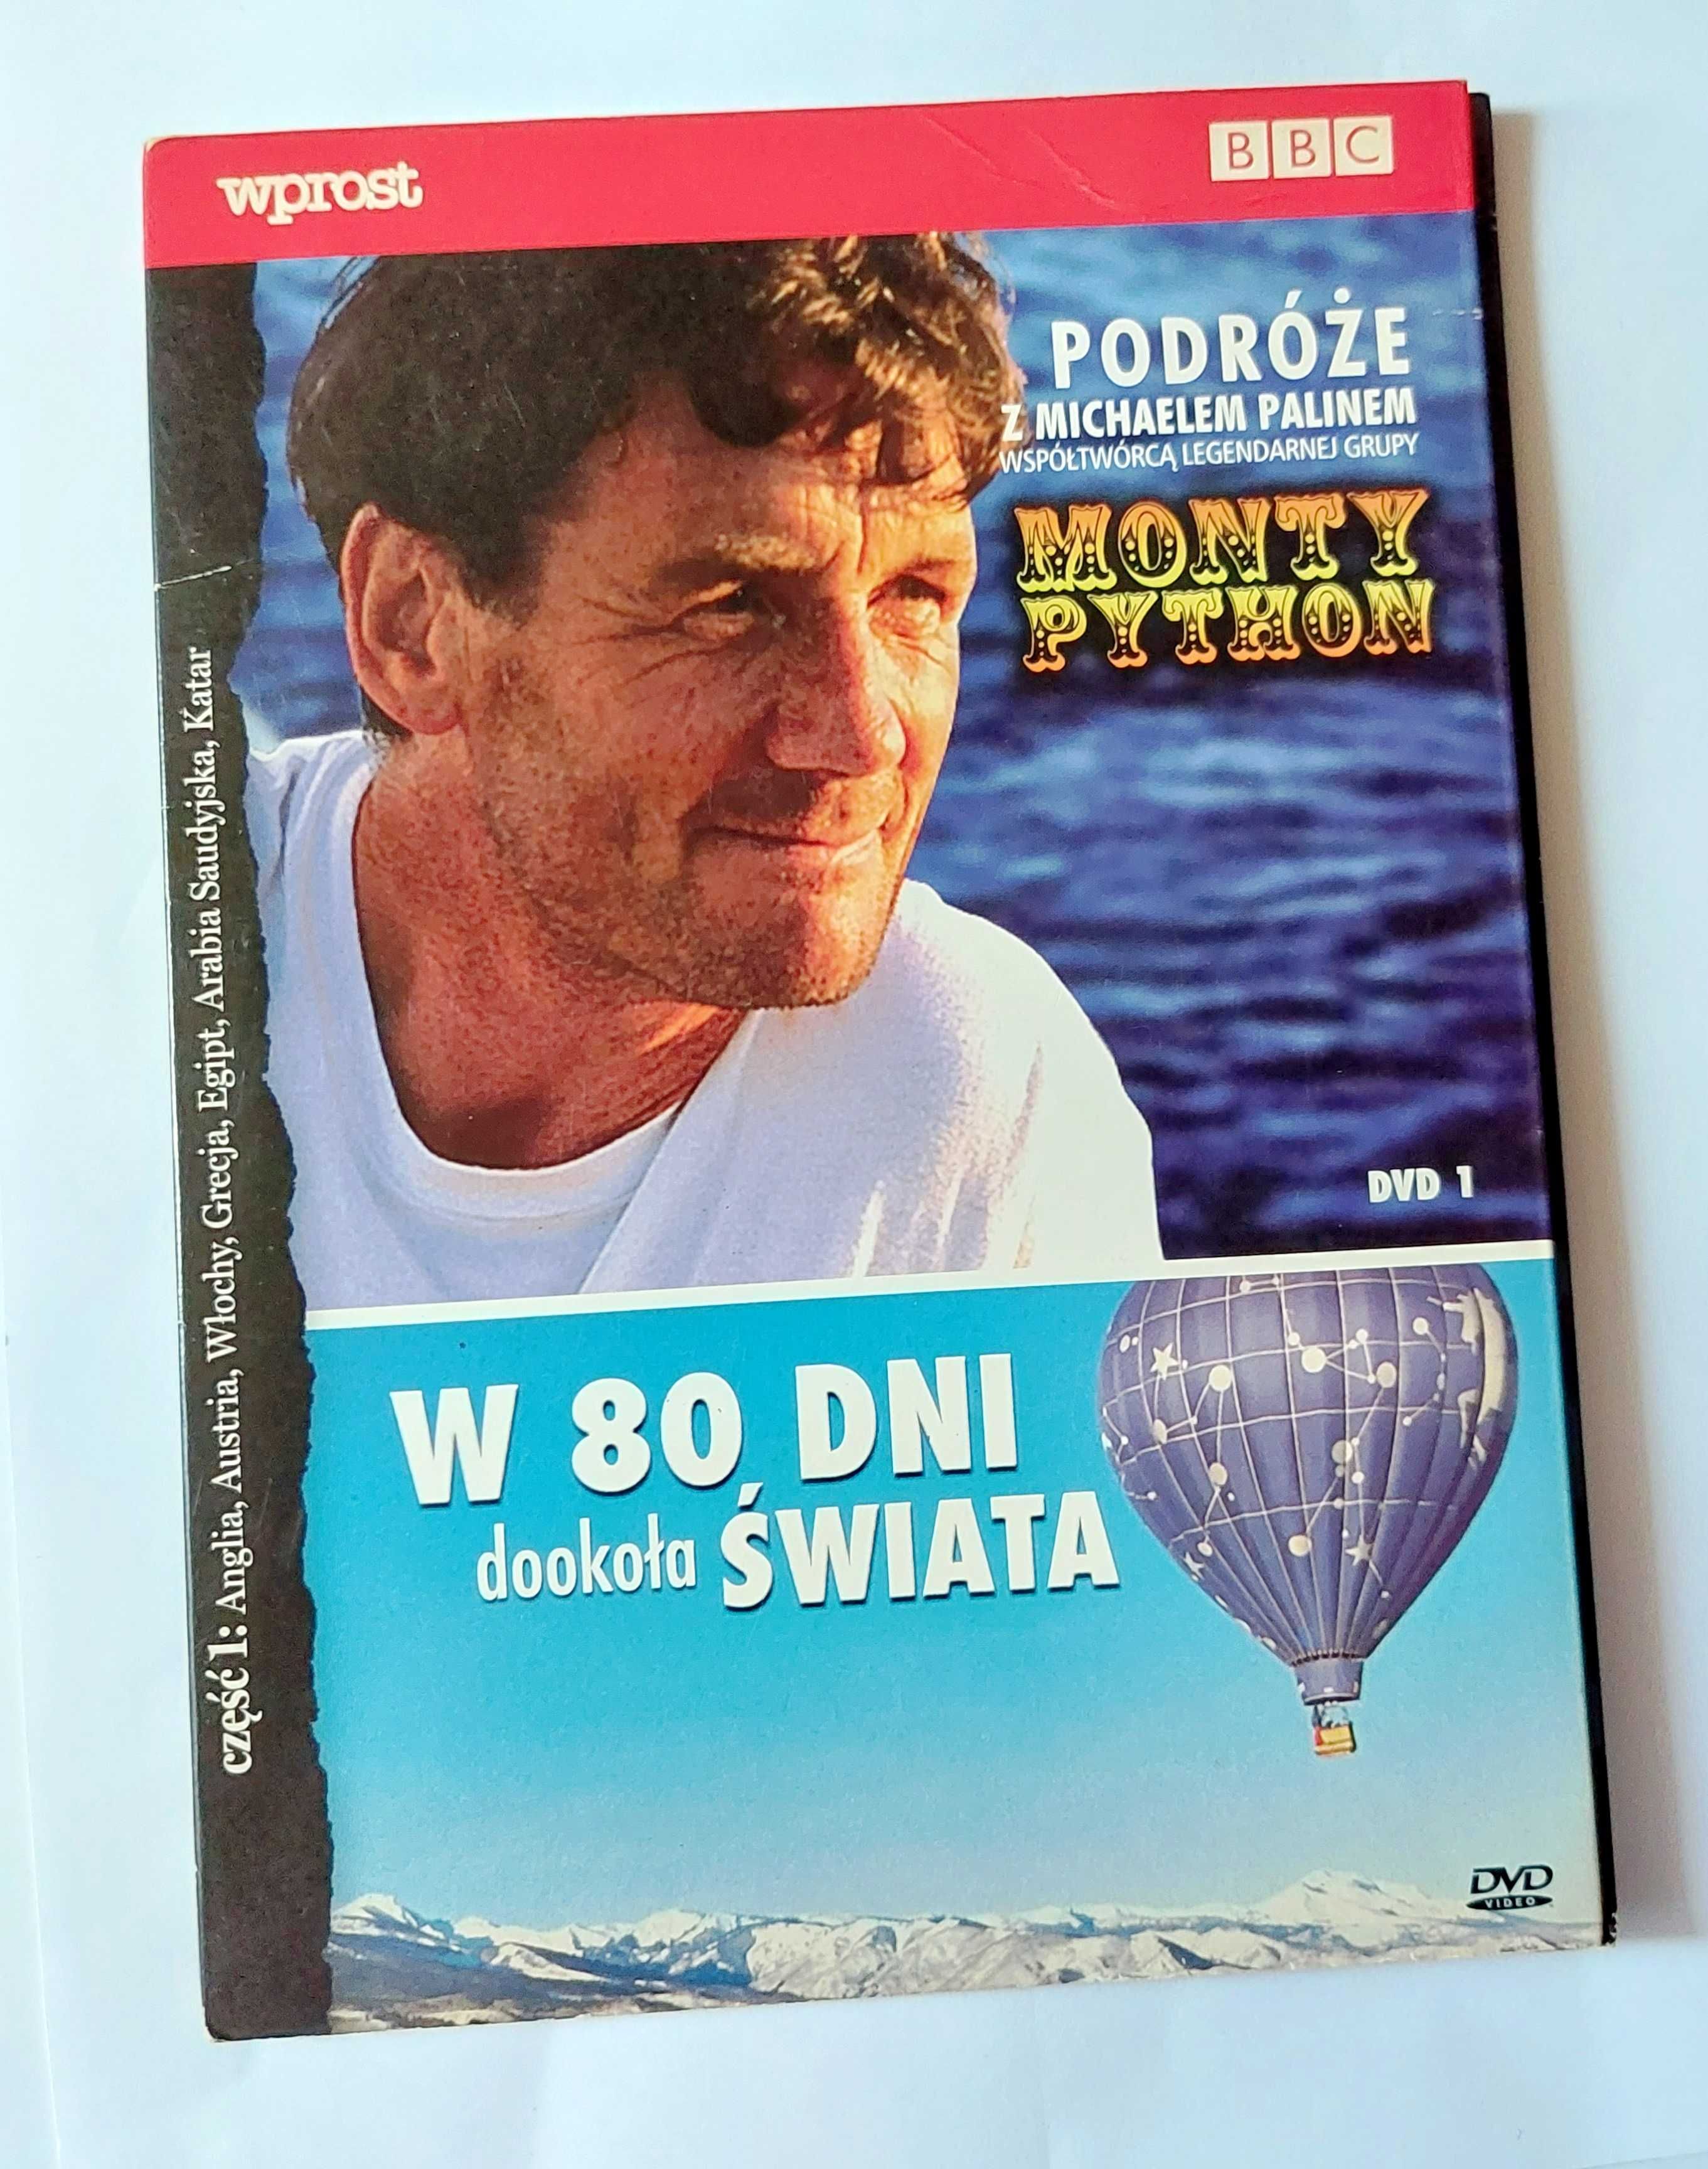 W 80 DNI DOOKOŁA ŚWIATA + Podróże z Michaelem Palinem | DVD